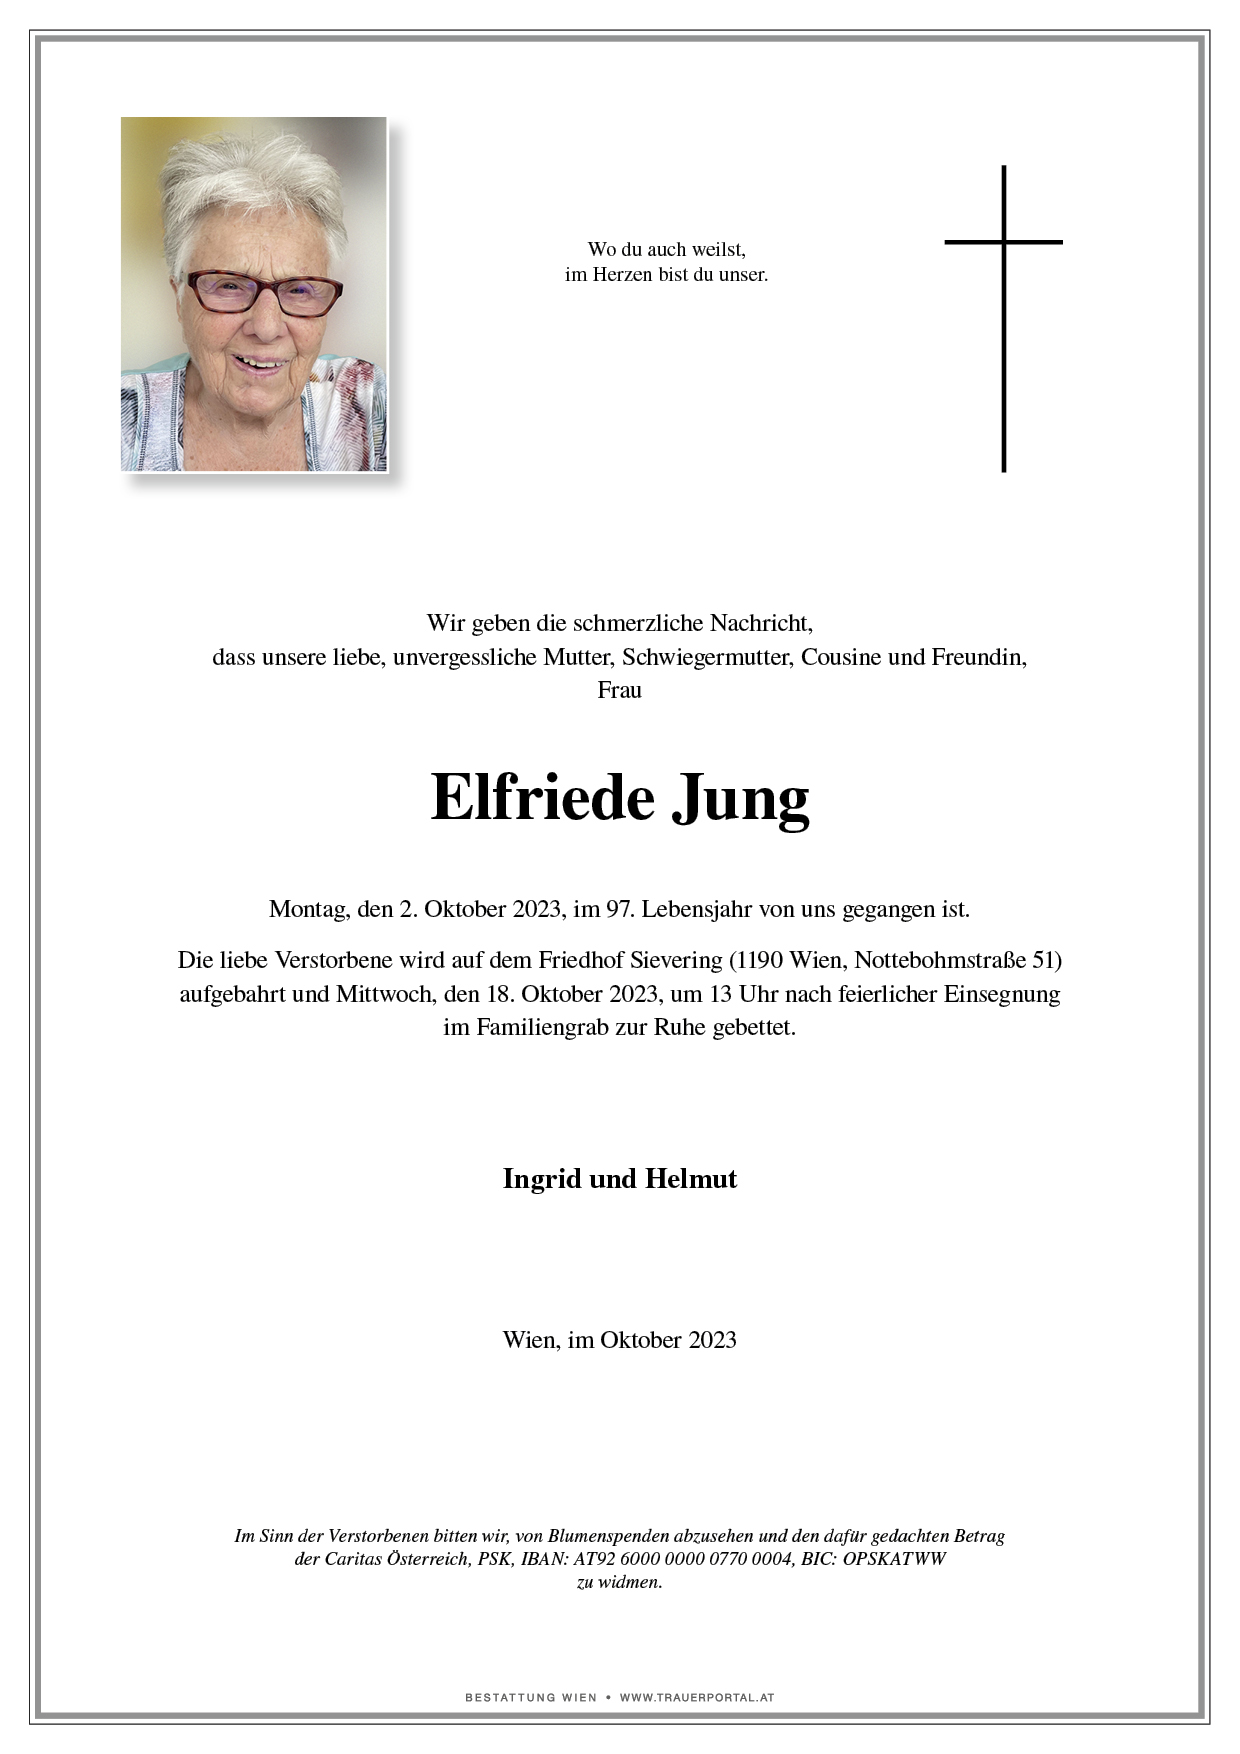 Elfriede Jung